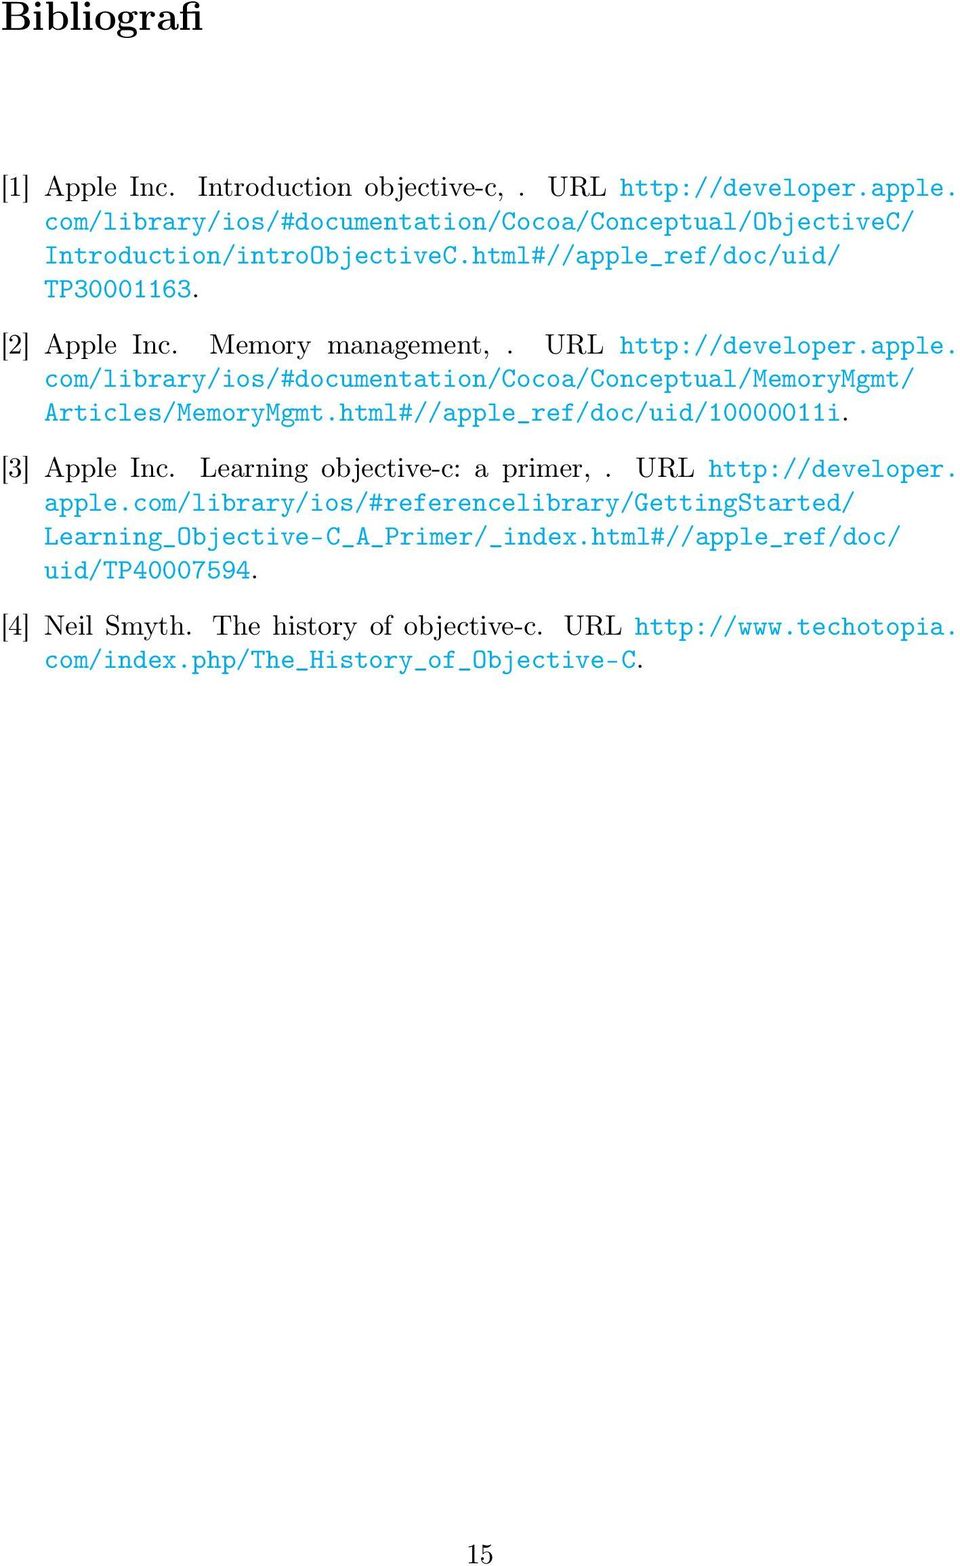 html#//apple_ref/doc/uid/10000011i. [3] Apple Inc. Learning objective-c: a primer,. URL http://developer. apple.